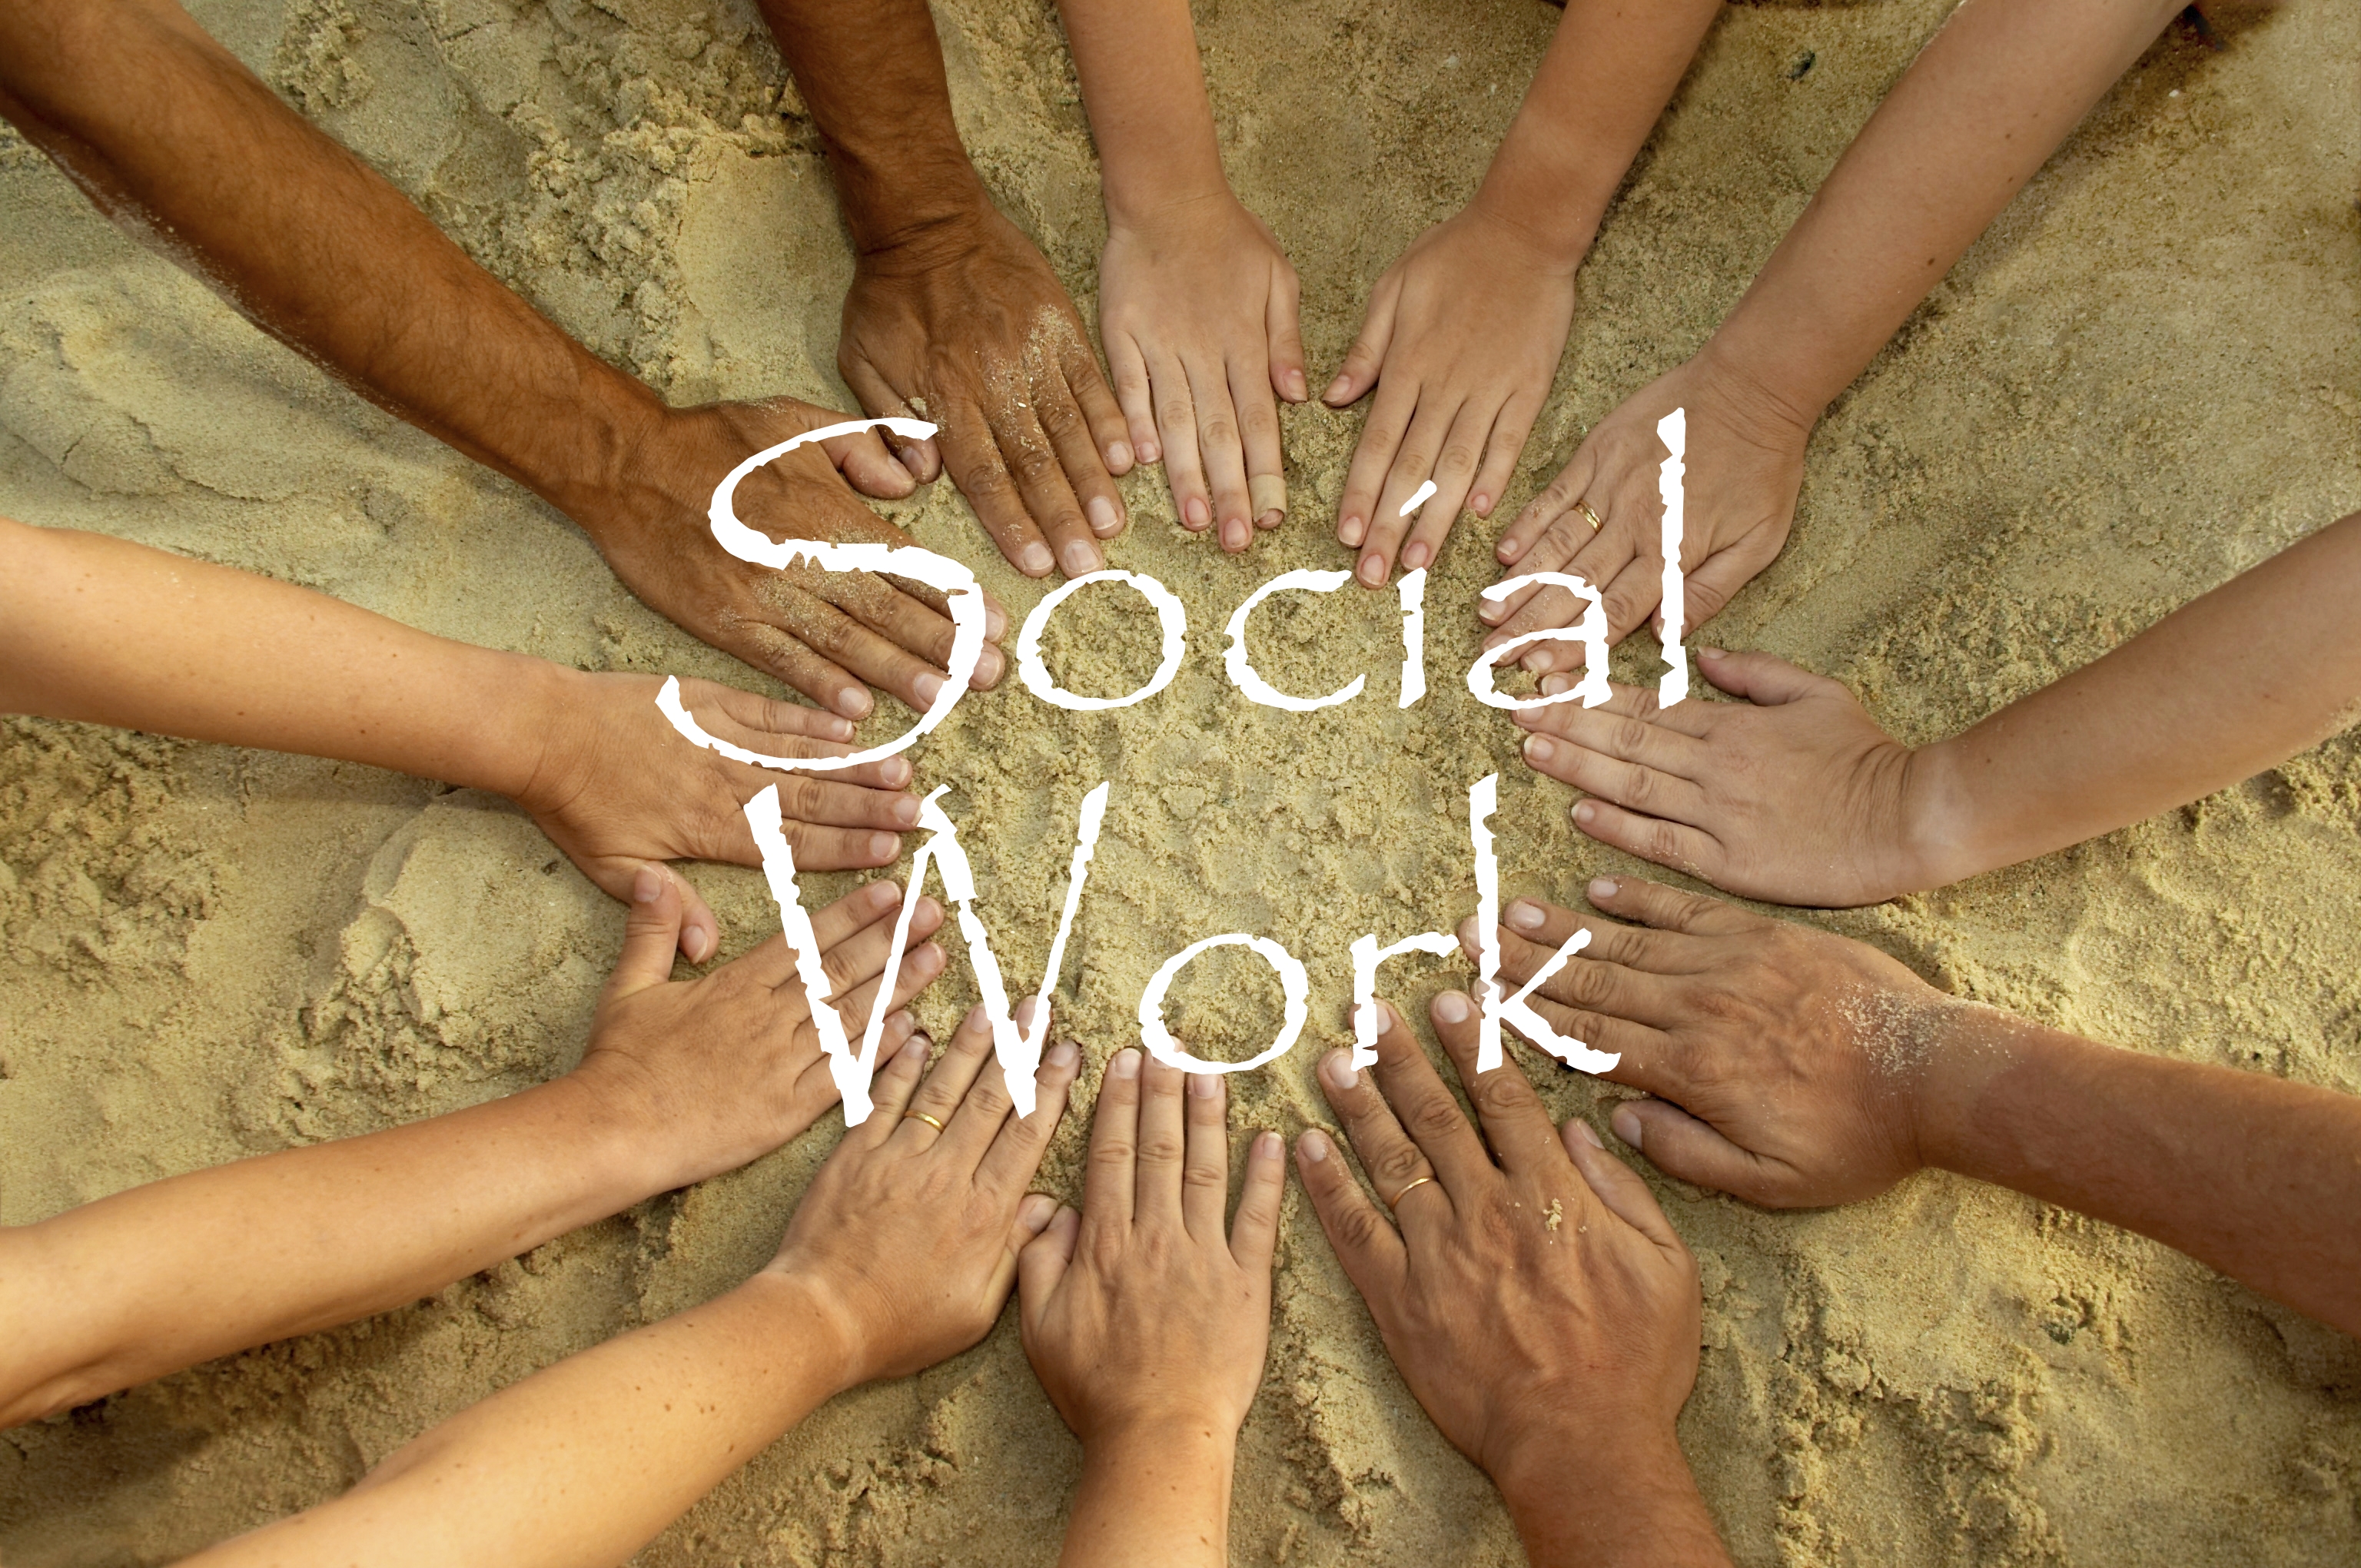 Công tác xã hội - Nghề của lòng nhân ái và sự sẻ chia